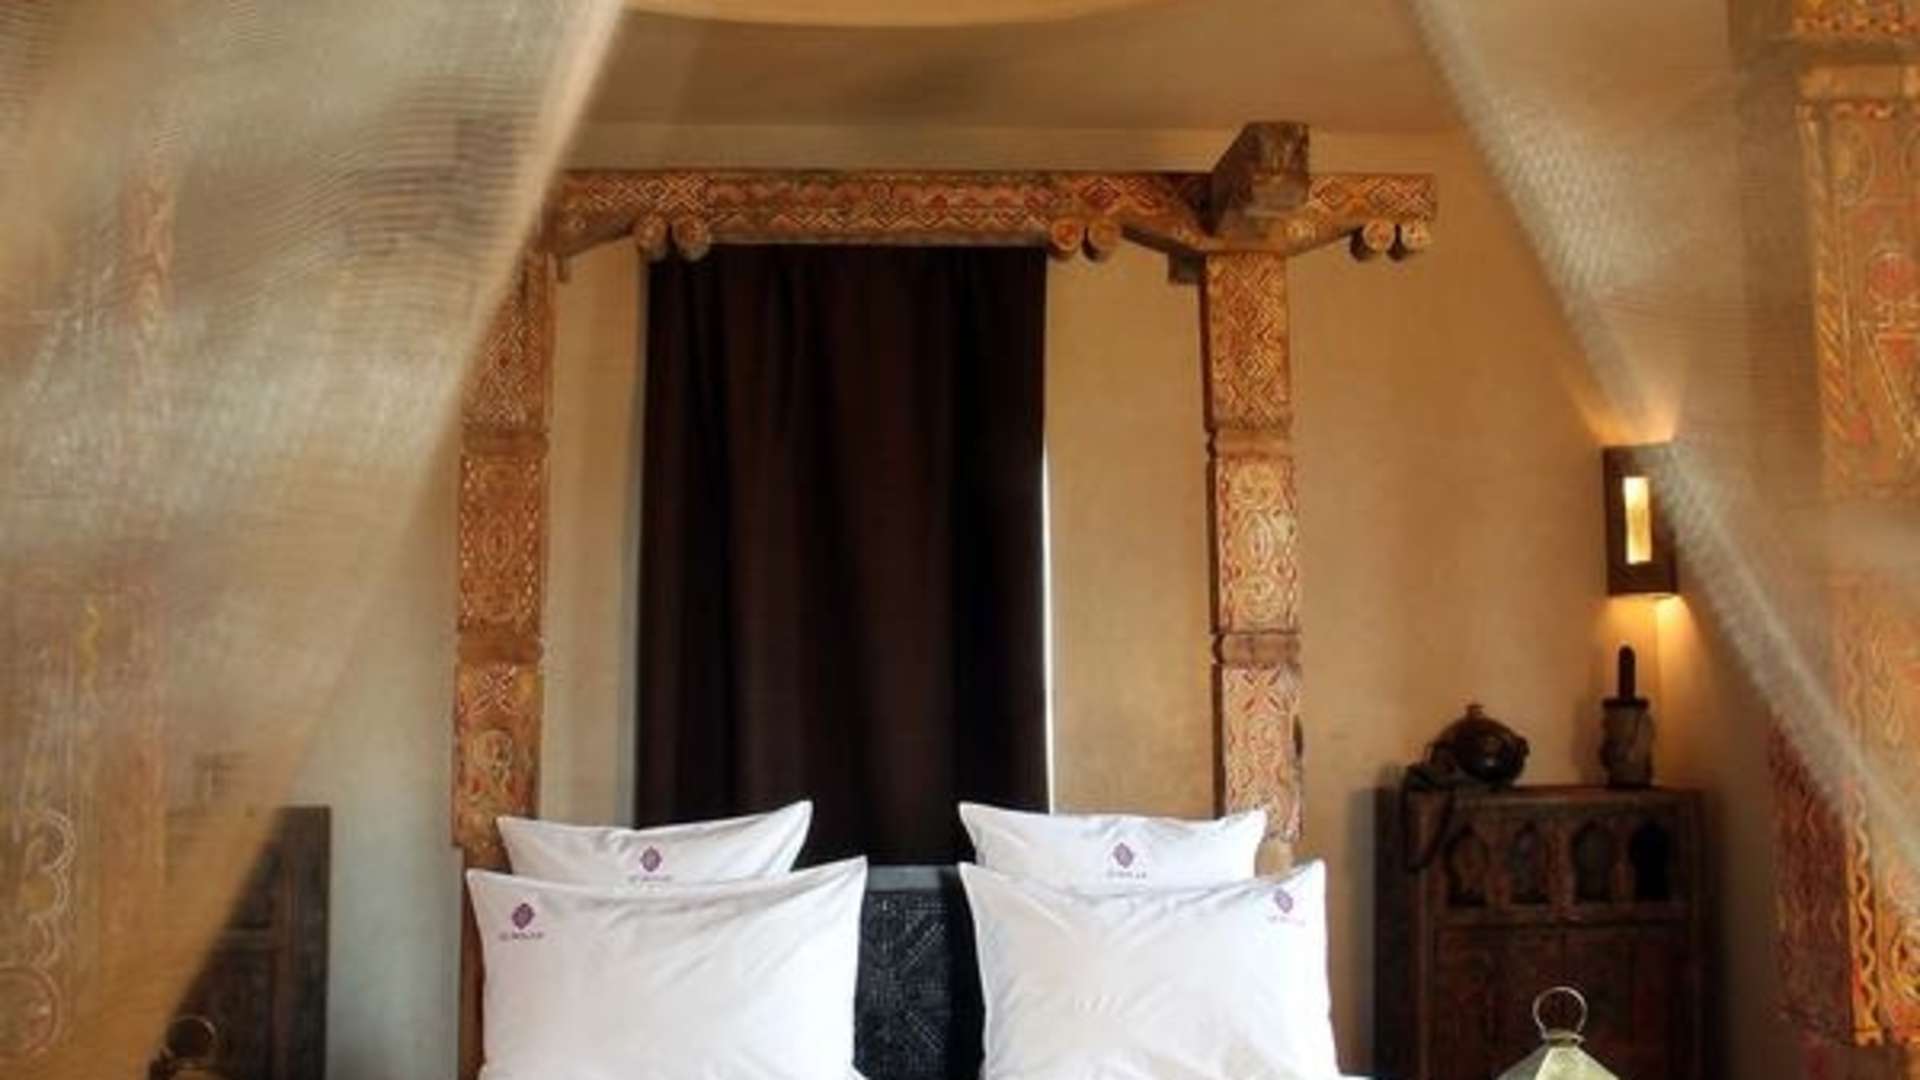 Location de vacances,Villa,Magnifique maison d'hôtes de 8 suites sur la route de l'Ourika avec services hôteliers,Marrakech,Route de l'Ourika